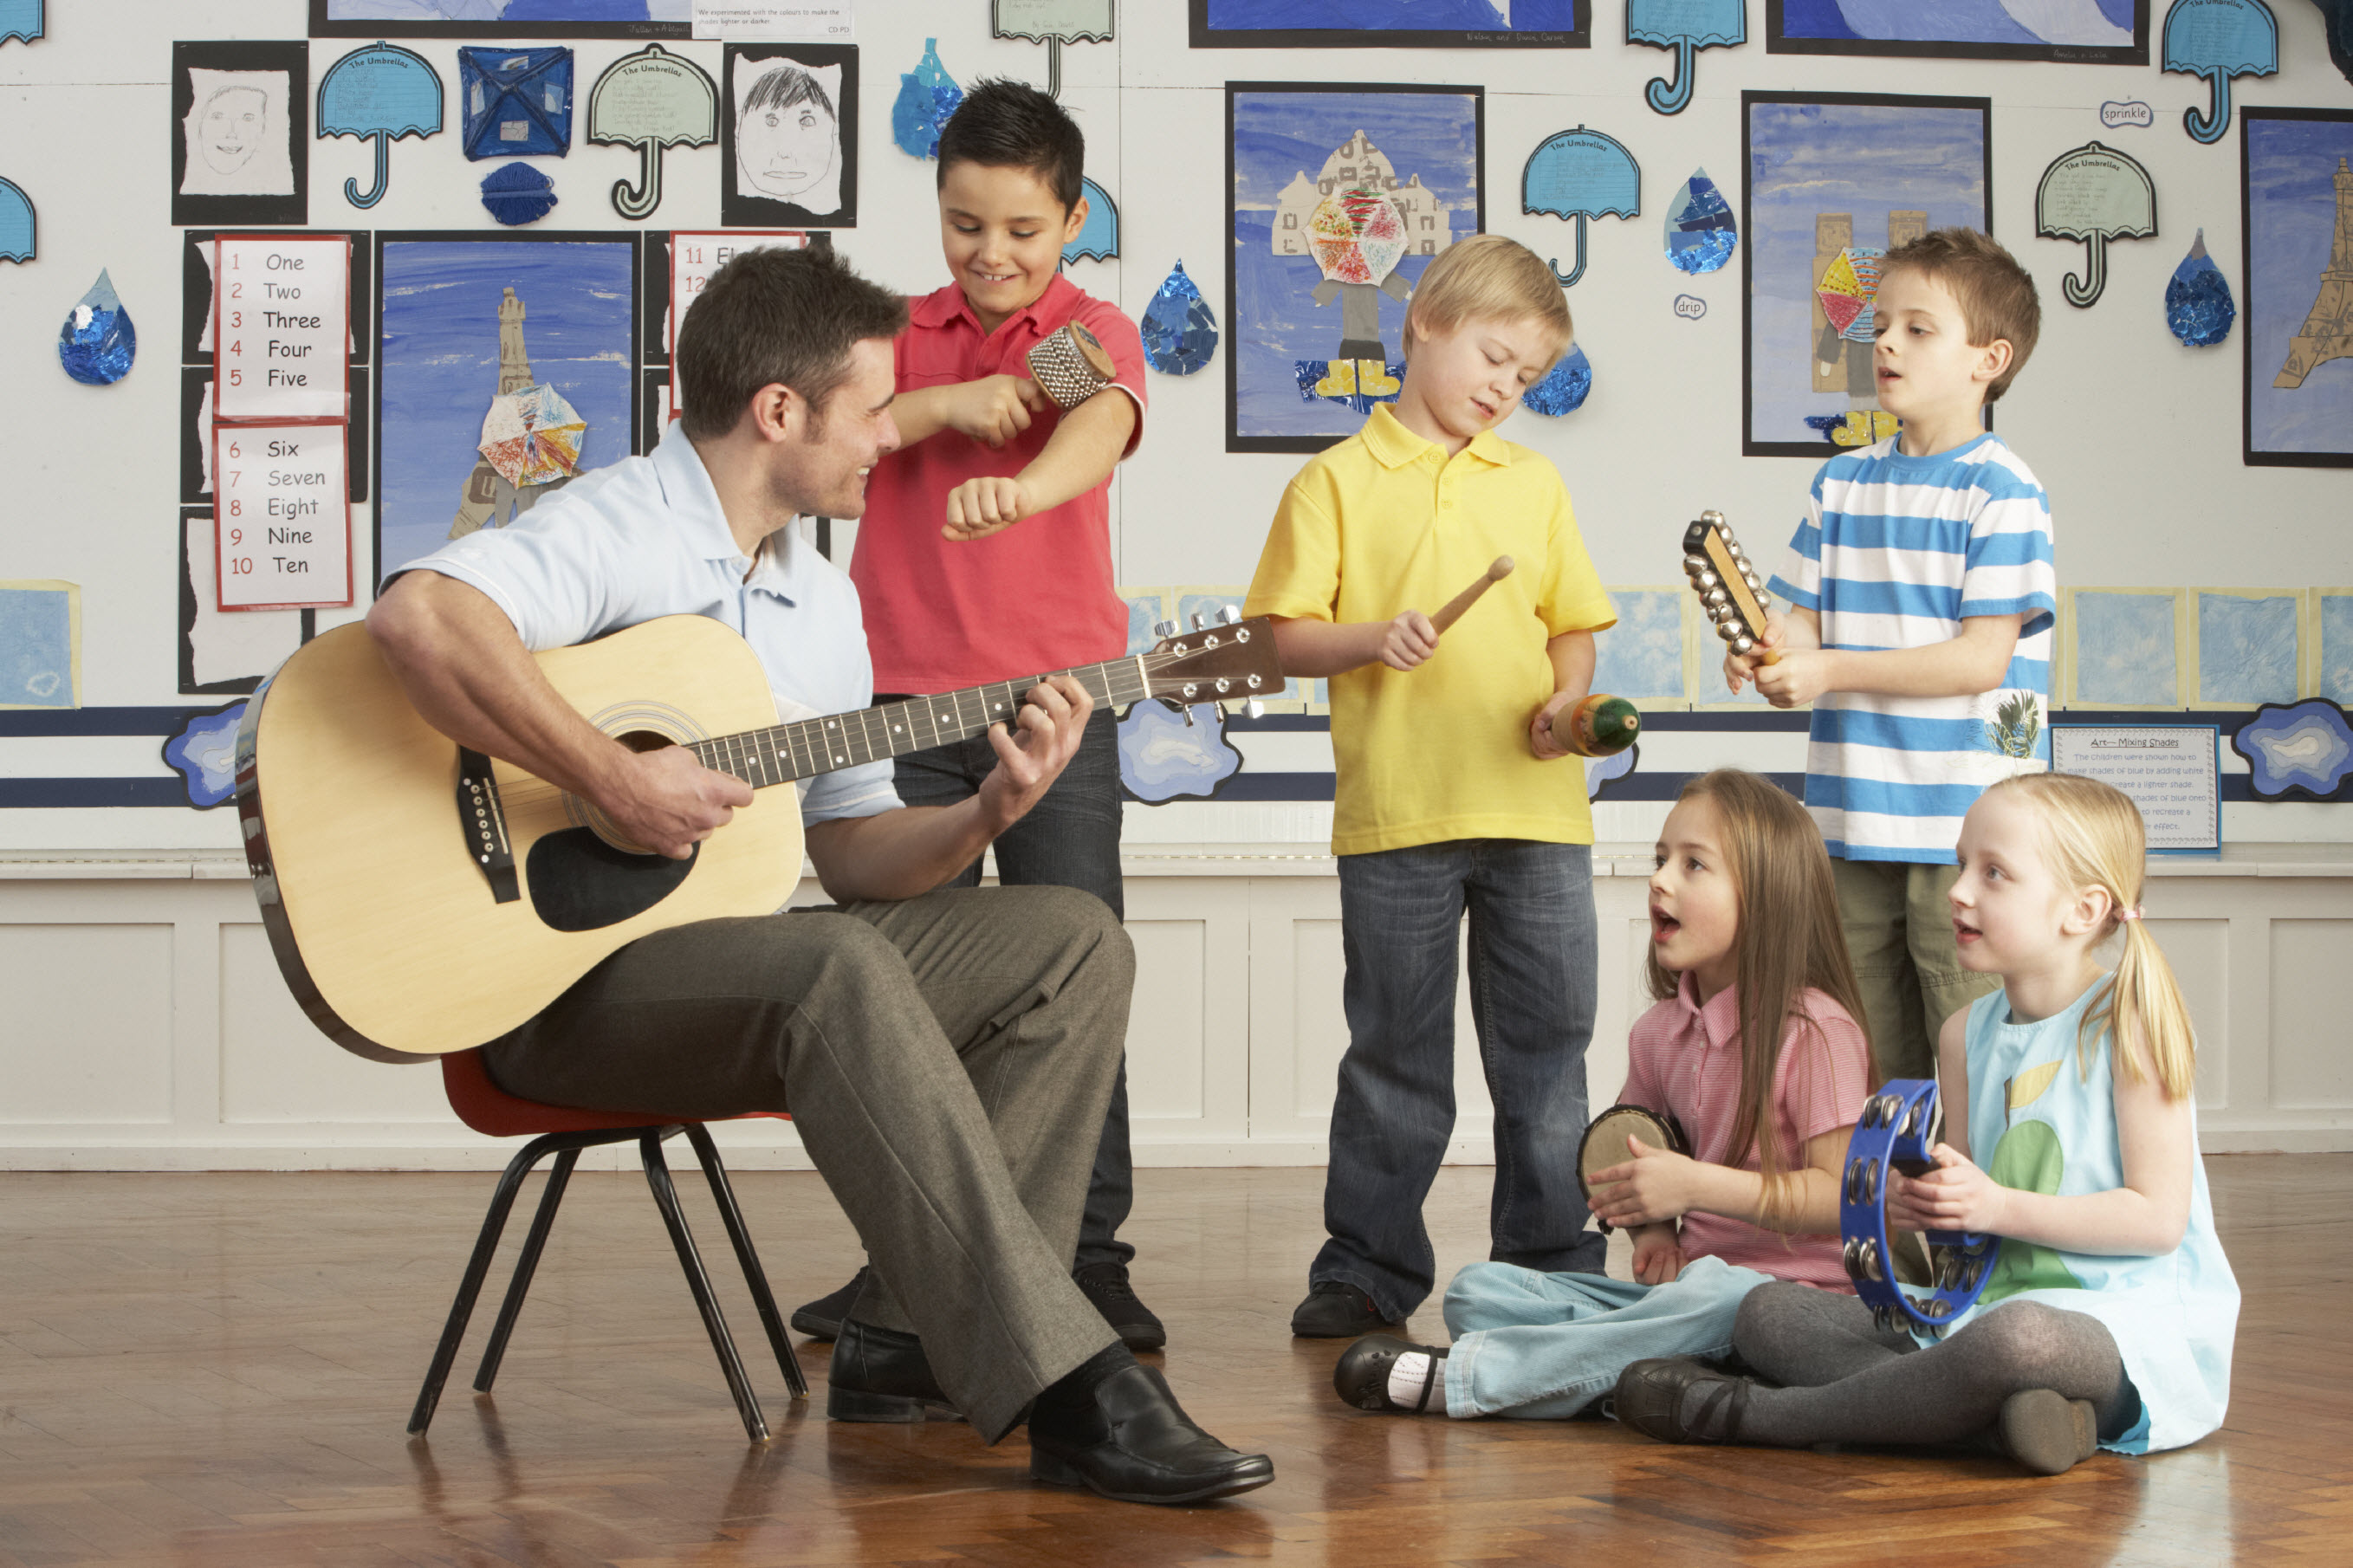 Вечера в музыкальных школах. Музыкальное занятие в детском саду. Дети на музыкальном занятии. Музыкальные инструменты для детей. Дети играющие на музыкальных инструментах.